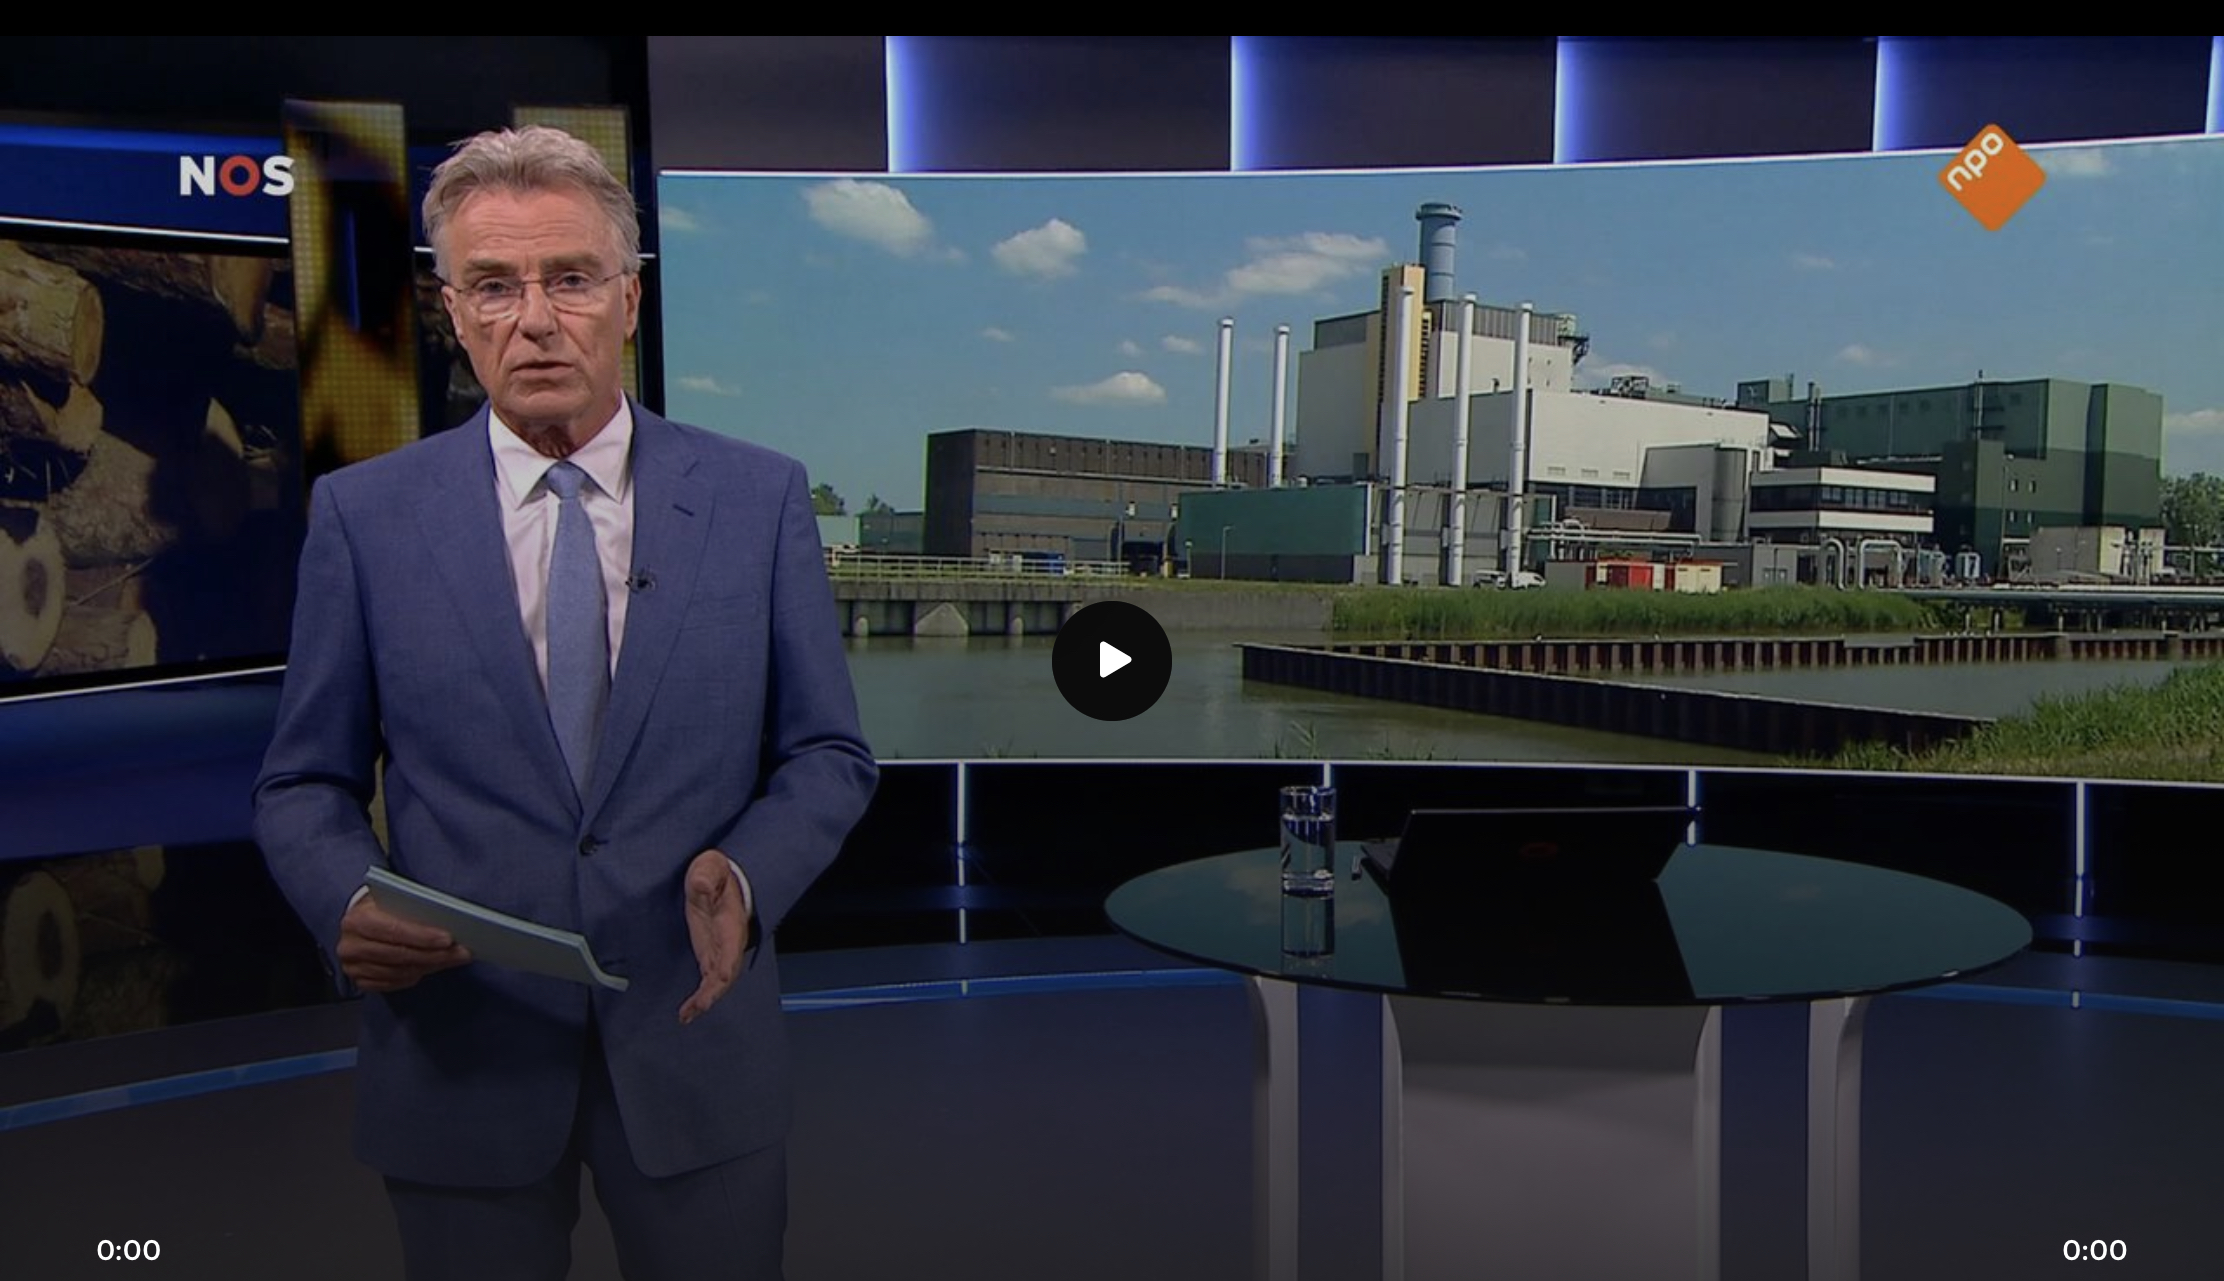 De bouw van de grootste biomassacentrale in NL gaat voorlopig niet door